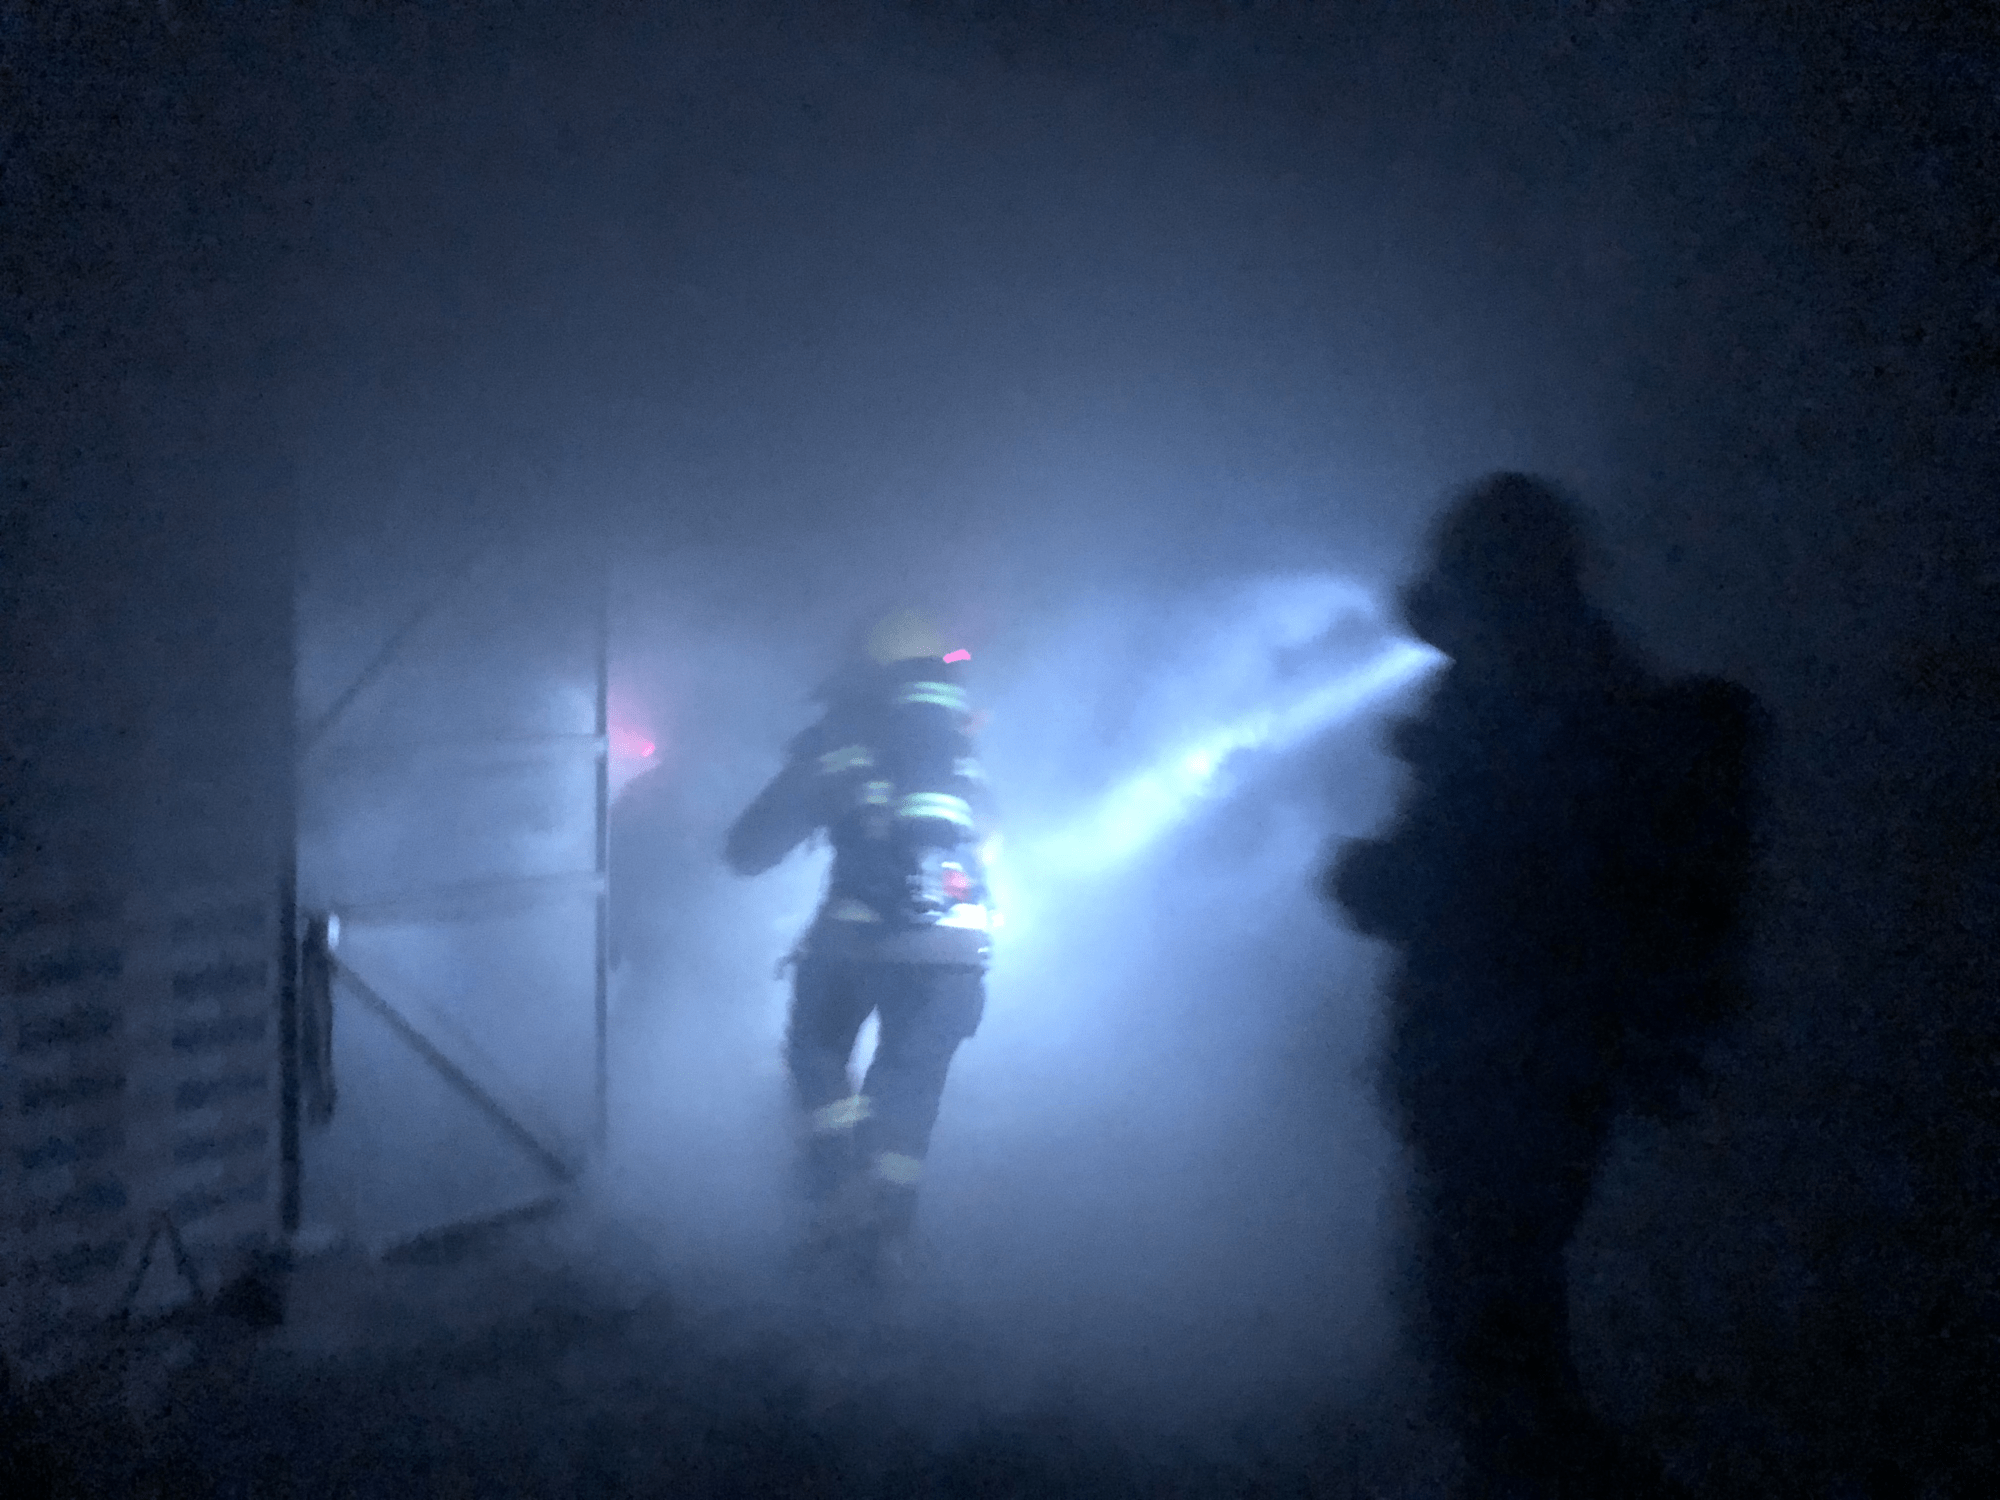 广西玉林一民房凌晨发生火灾致8人被困 自建房消防安全隐患多引关注